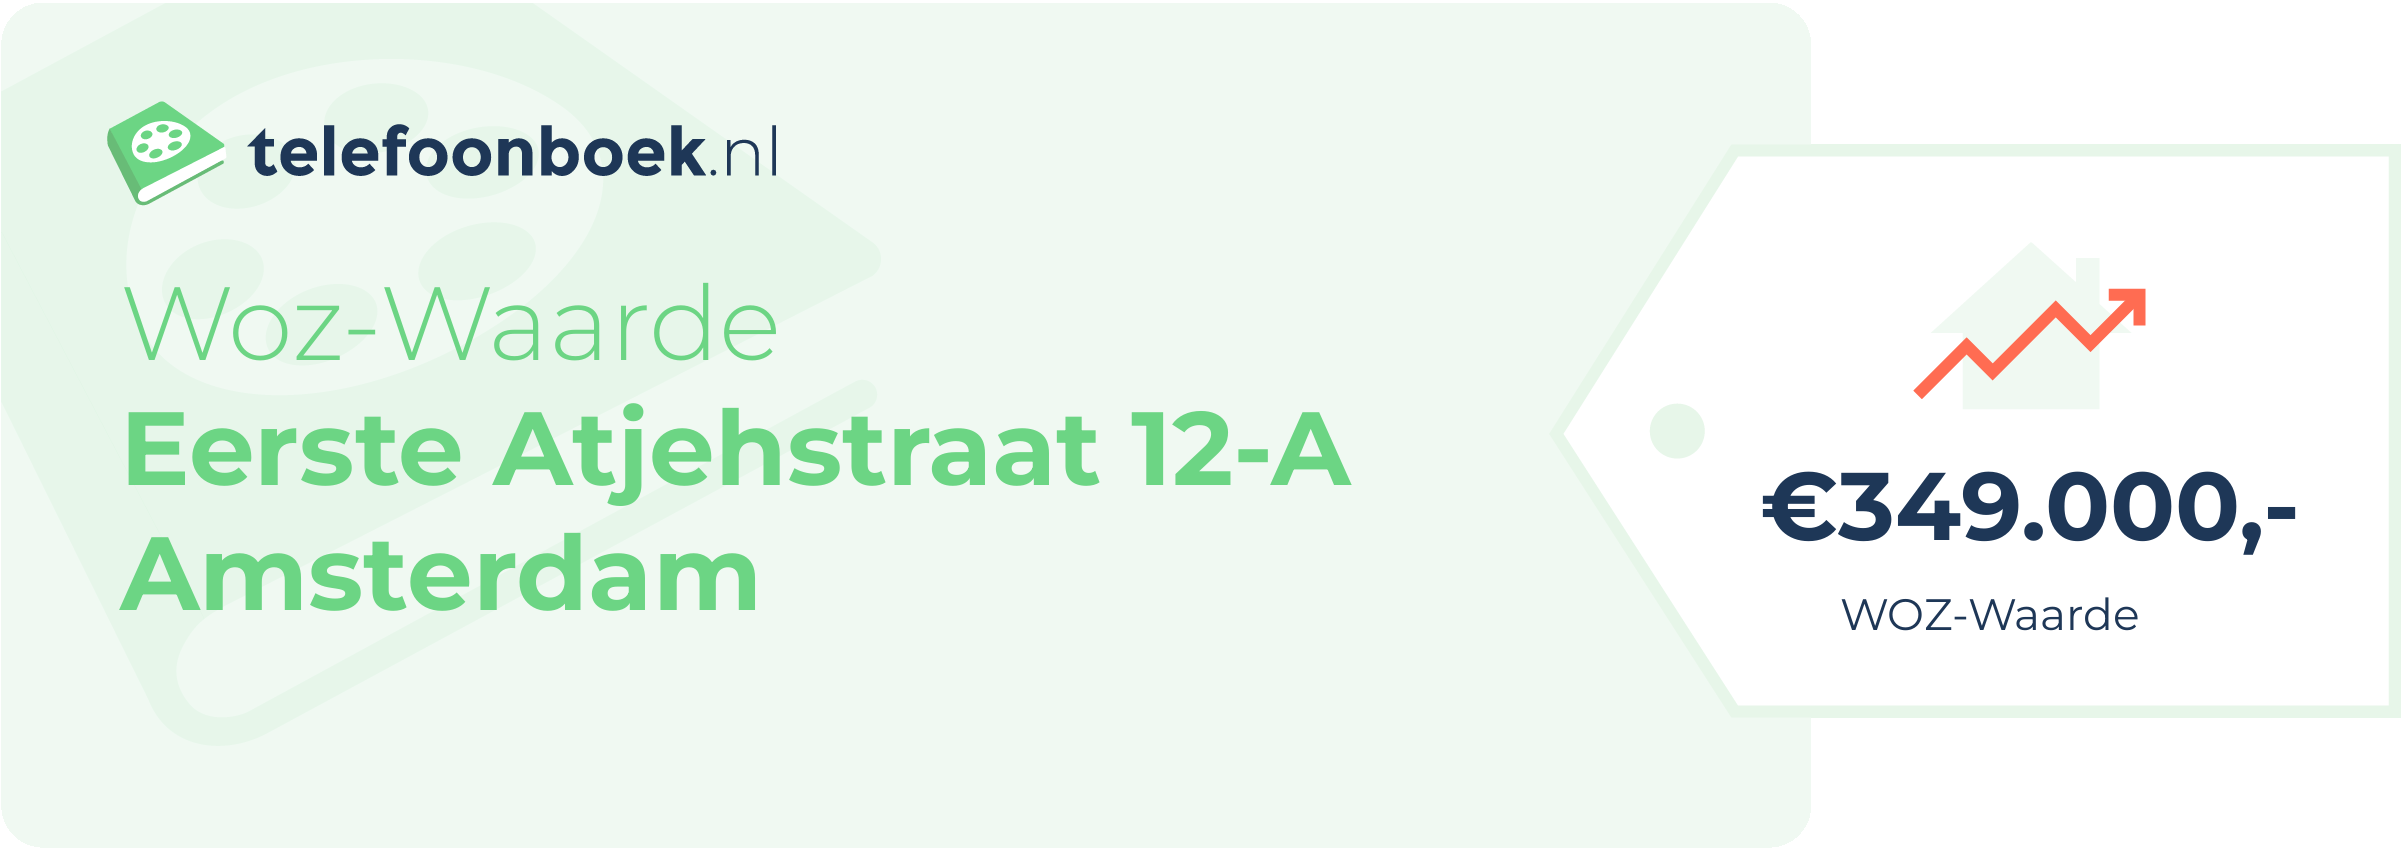 WOZ-waarde Eerste Atjehstraat 12-A Amsterdam